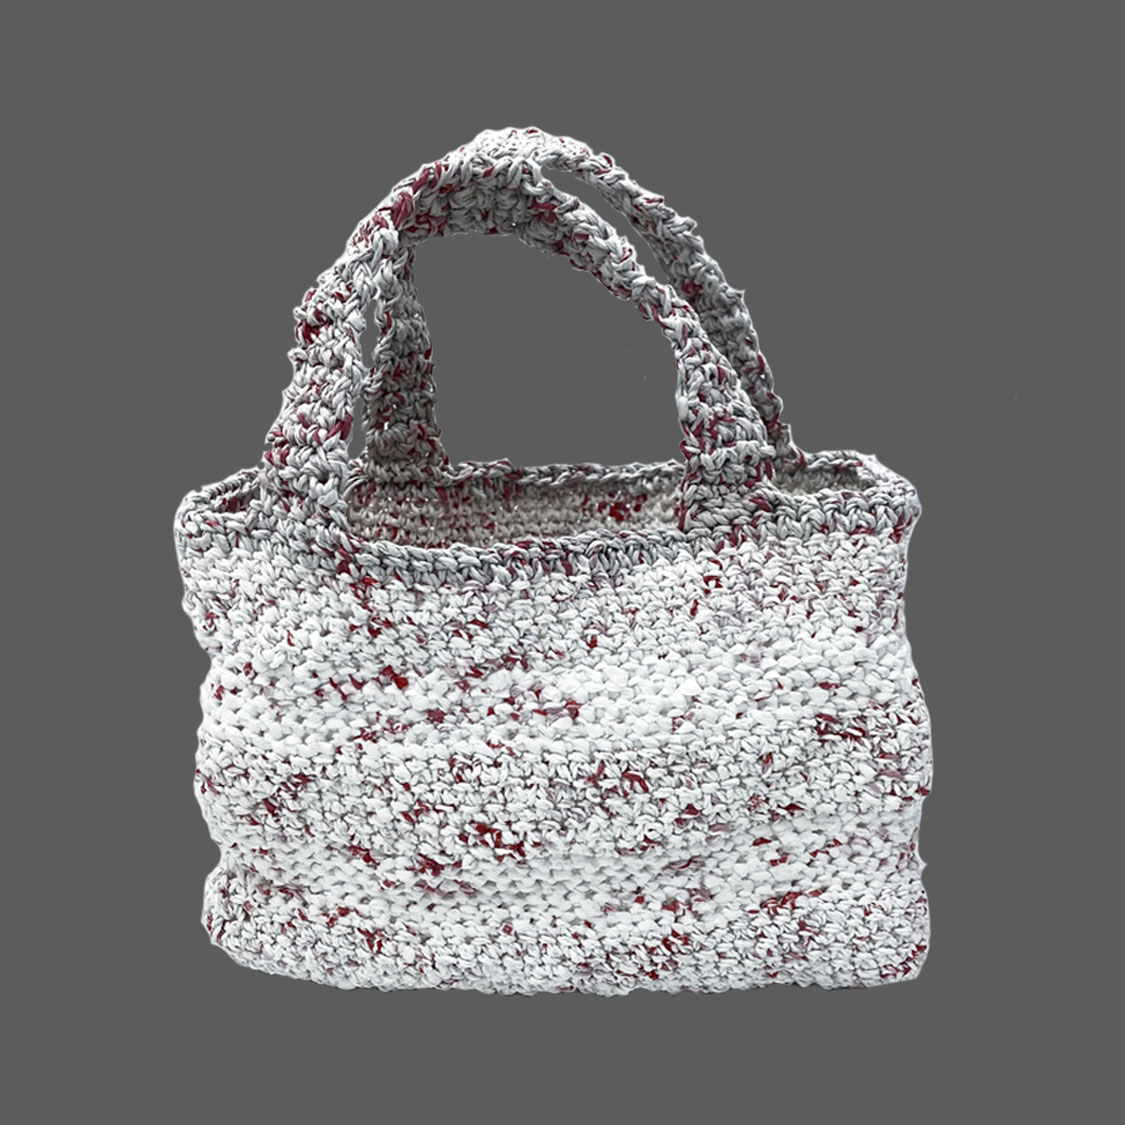 Beginner Crochet: Plarn Bag Tutorial -Part 1 - YouTube